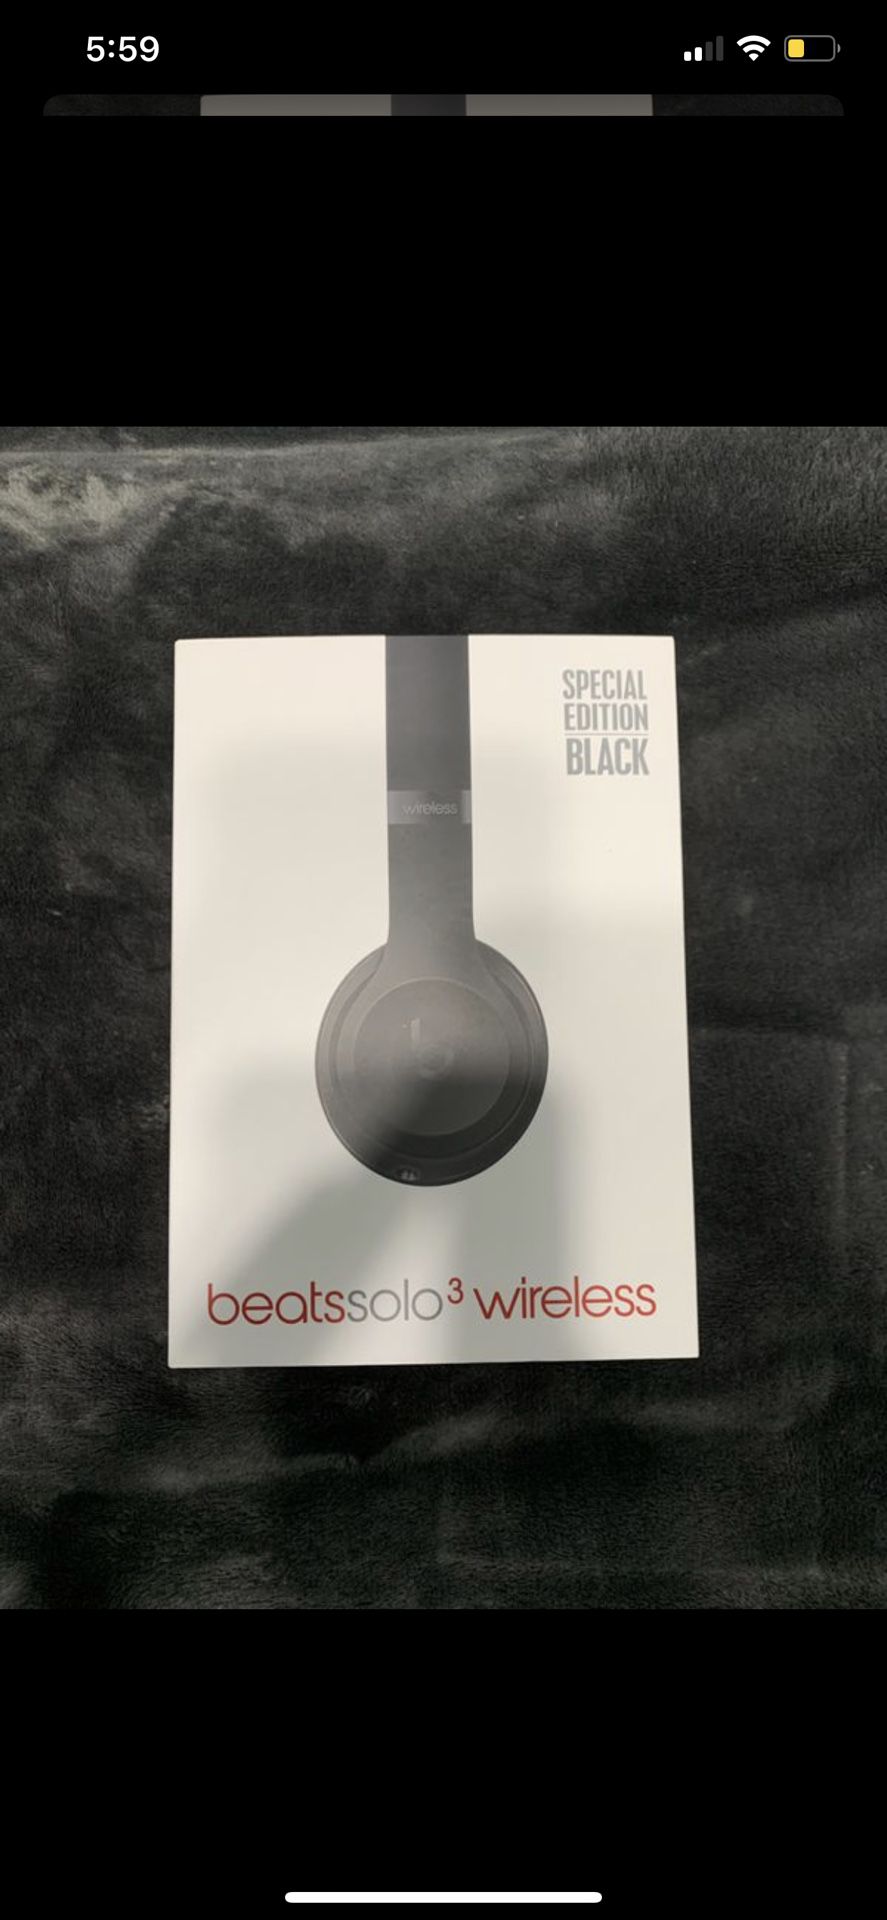 Beats solo 3 wireless